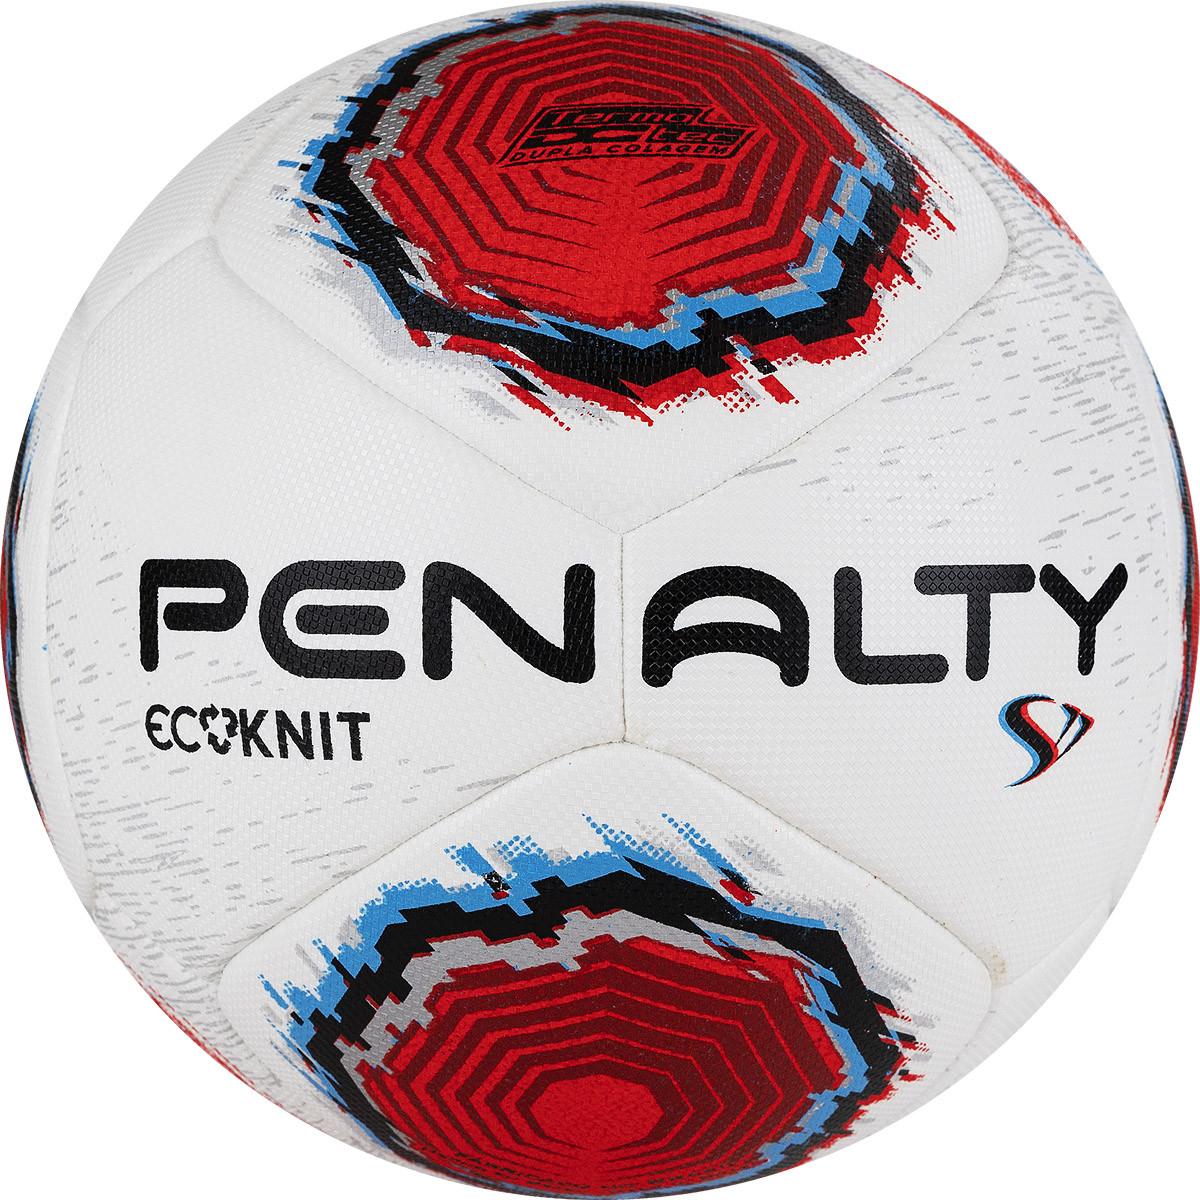 Мяч футбольный Penalty Bola Campo S11 Ecoknit XXII, 5416231610-U, р.5, FIFA Pro, PU, терм.,бел-кр-син 1200_1200